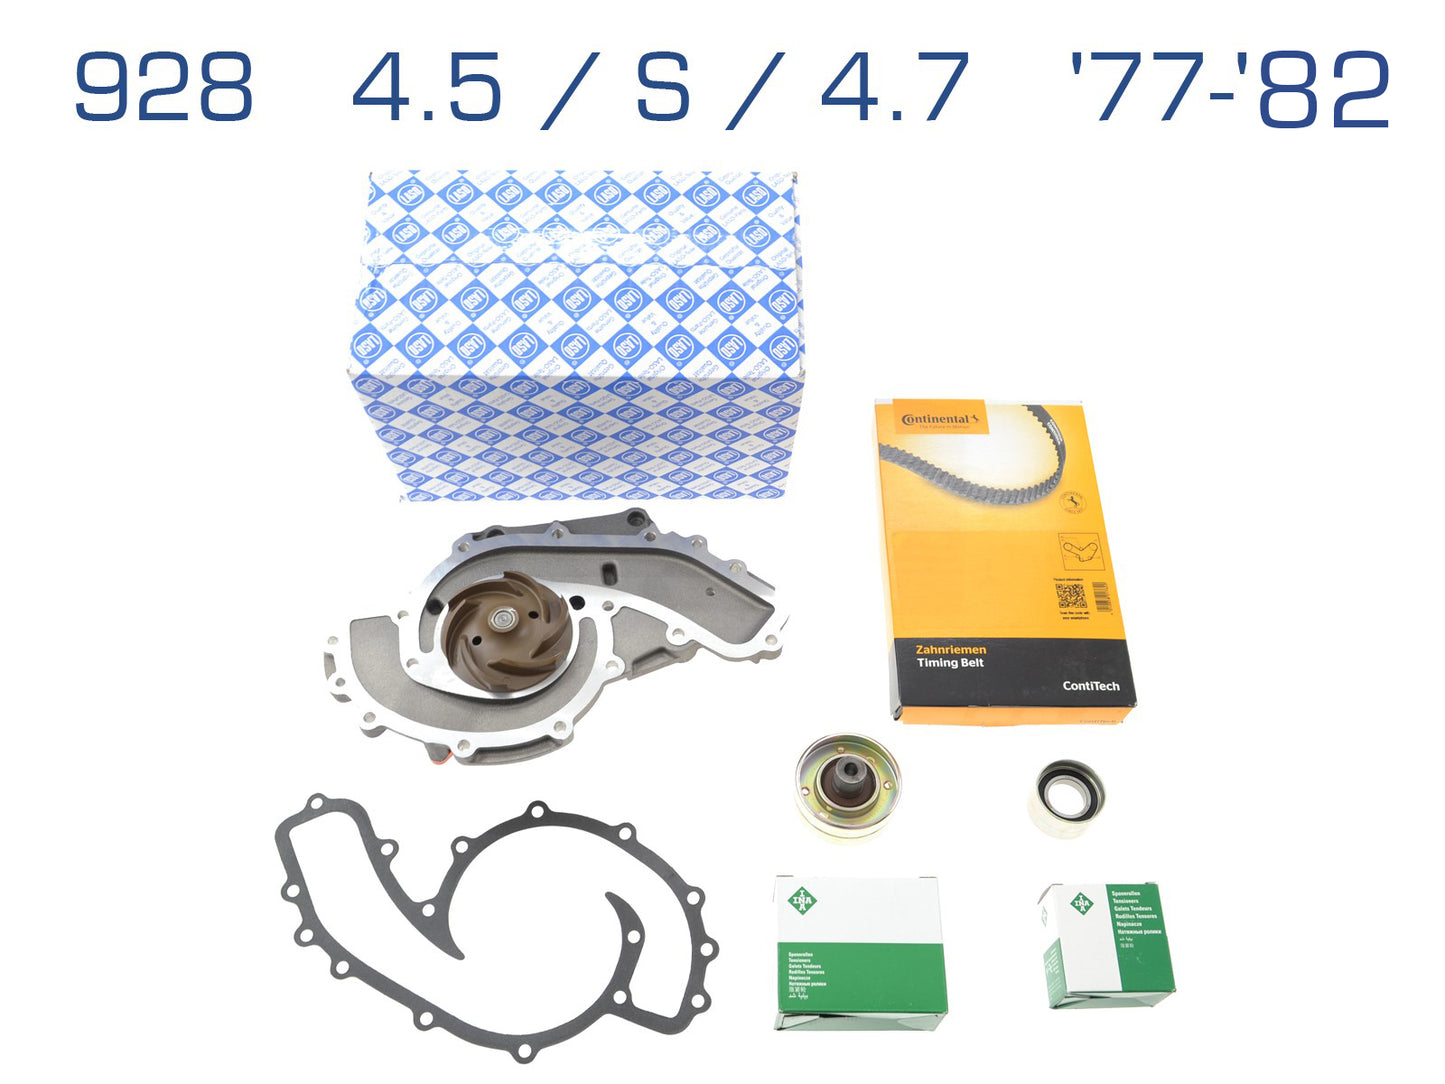 Water pump + timing belt for Porsche 928 4.5 S 4.7 '77-'82